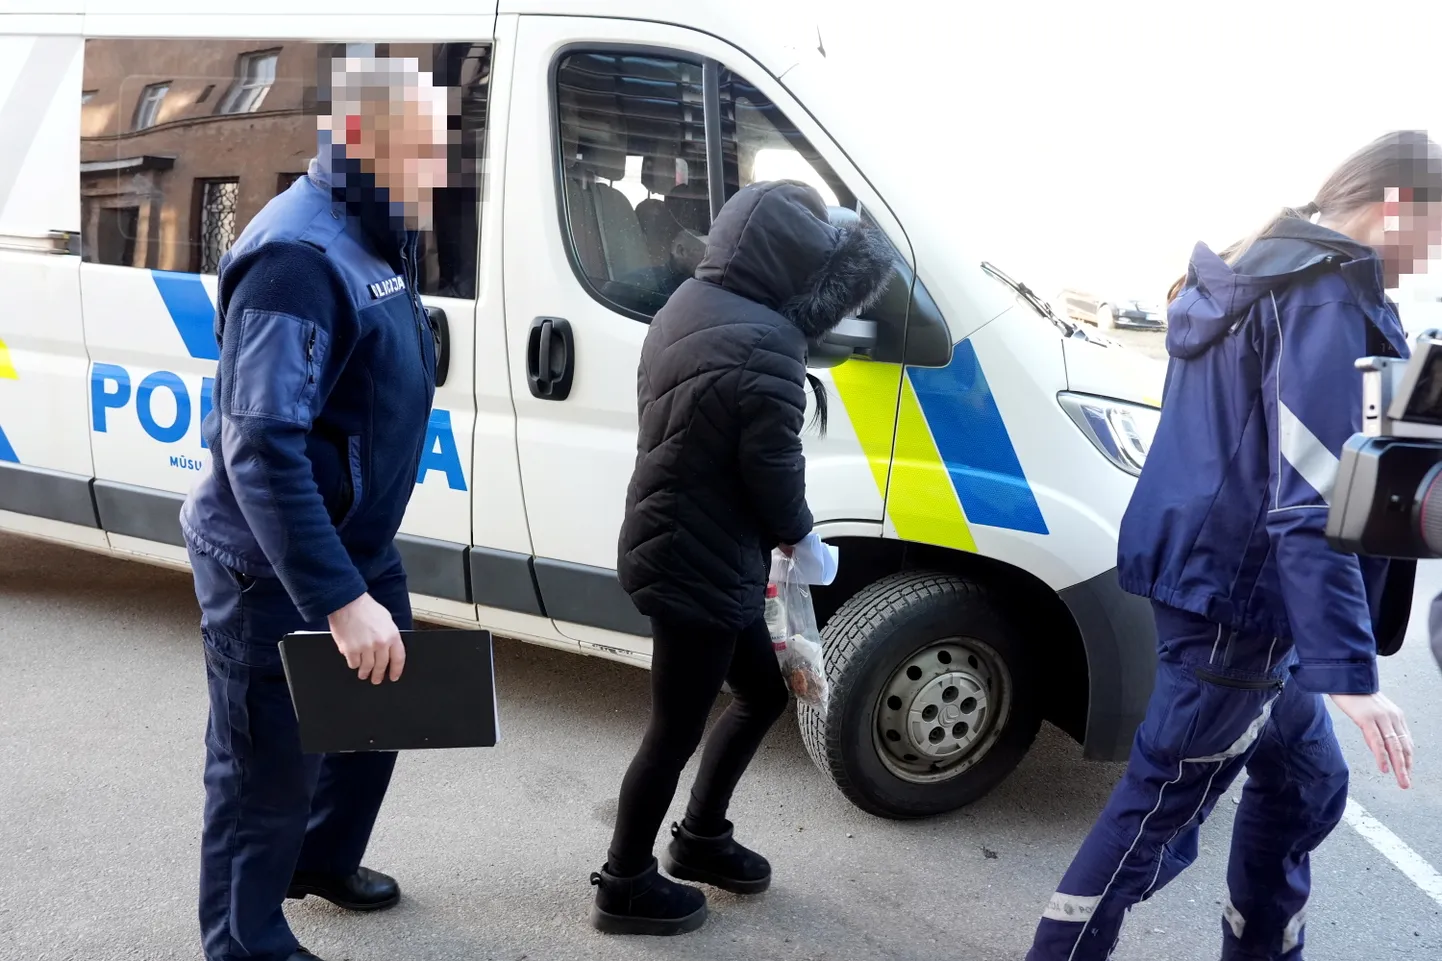 Okupācijas muzeja dedzināšanas lietā aizturētā sieviete tiek konvojēta uz tiesas sēdi Rīgas pilsētas Vidzemes priekšpilsētas tiesā, kur lems par apcietinājuma piemērošanu.